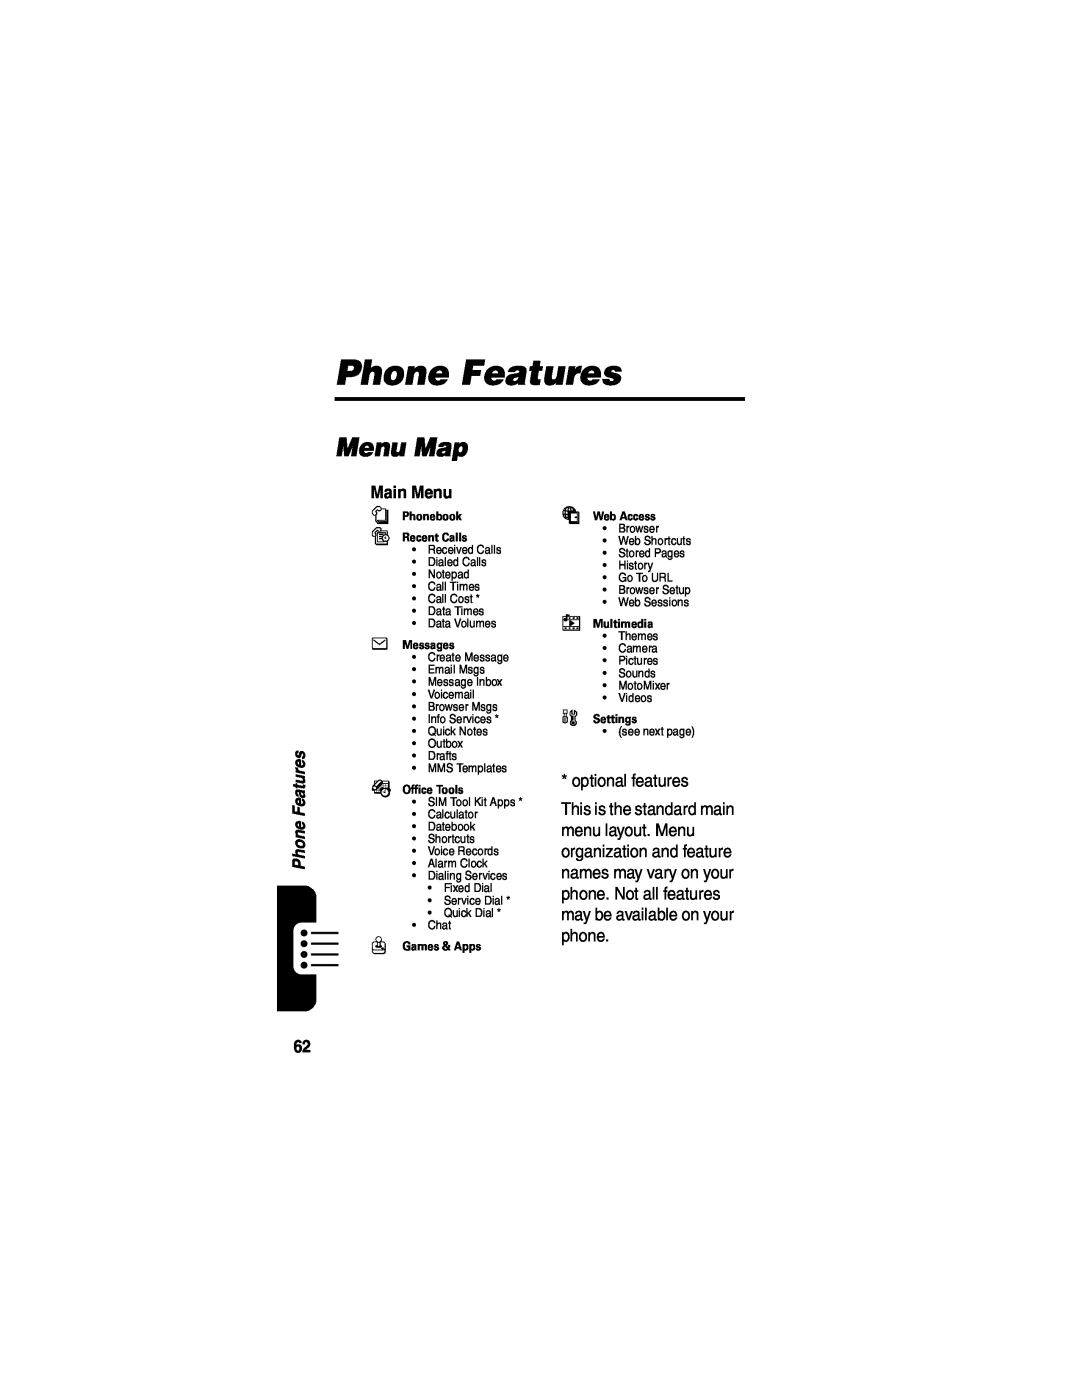 Motorola V555 manual Phone Features, Menu Map 